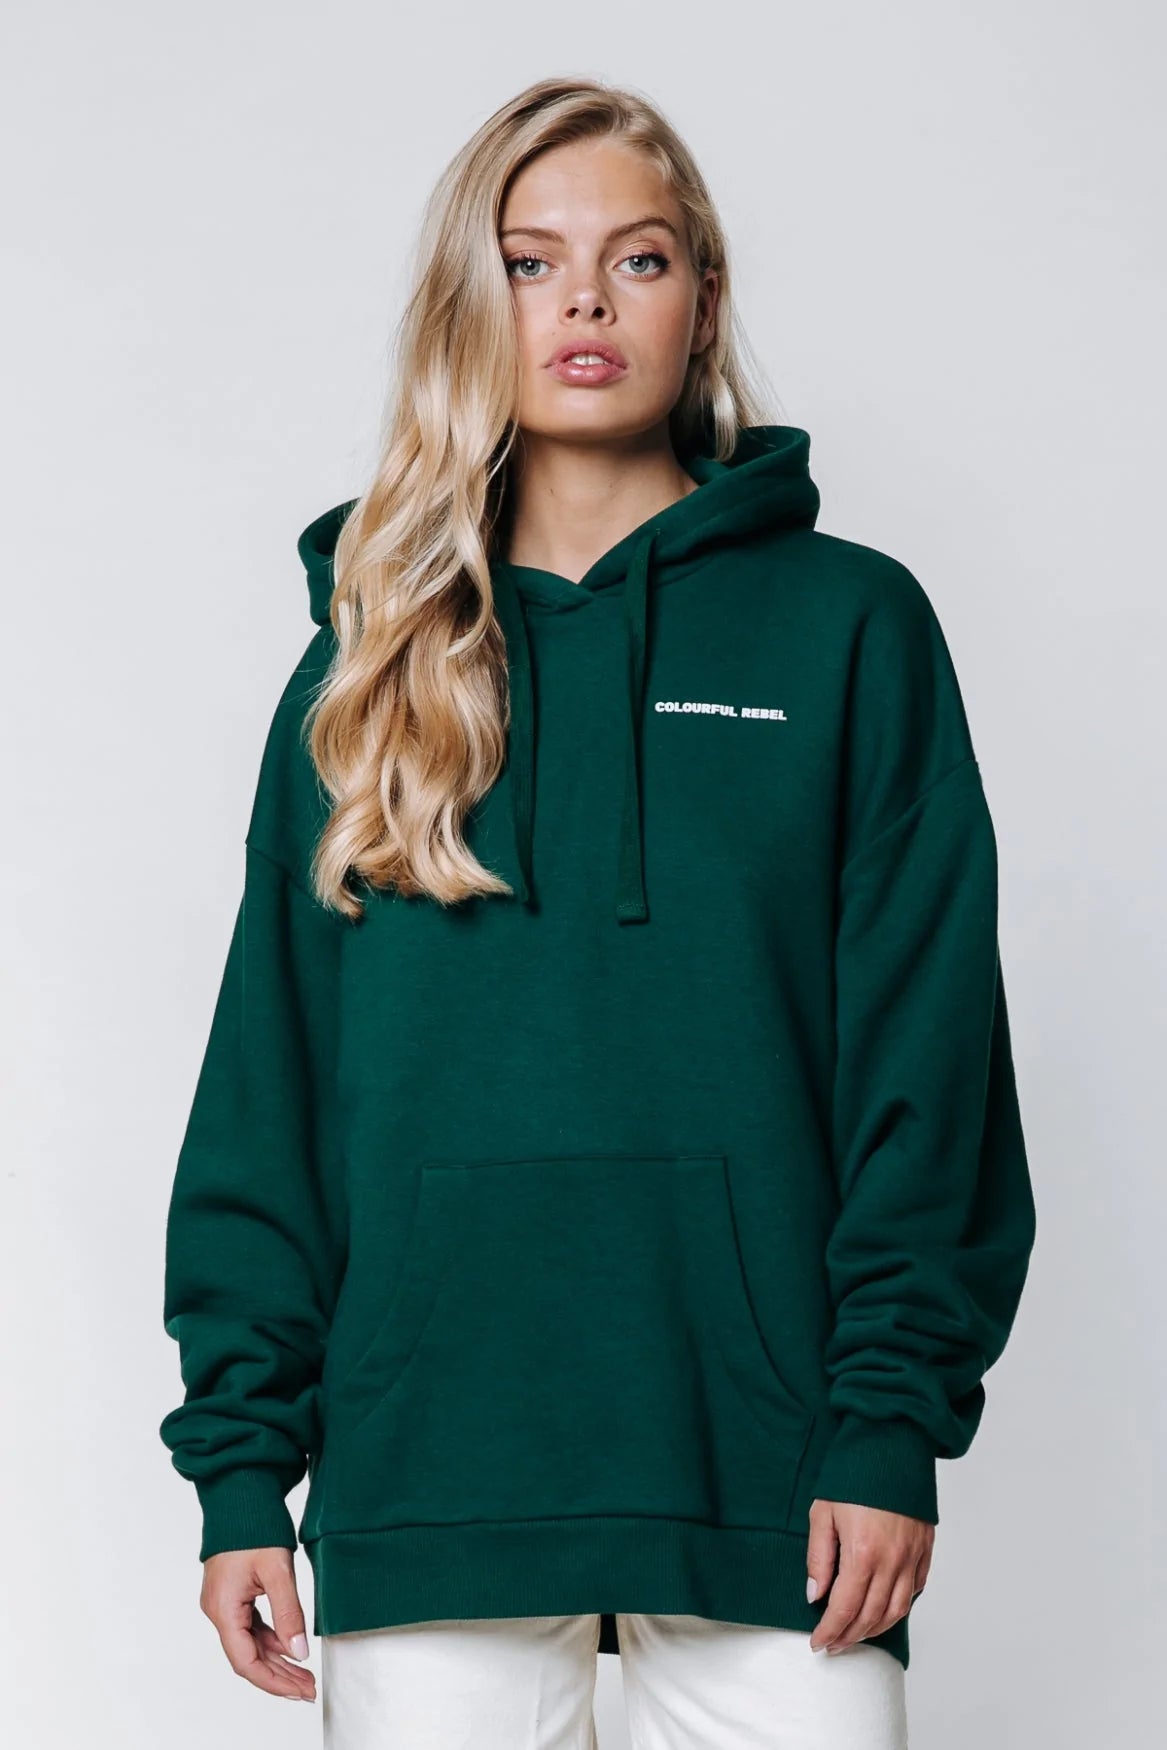 Roar hoodie - forest green